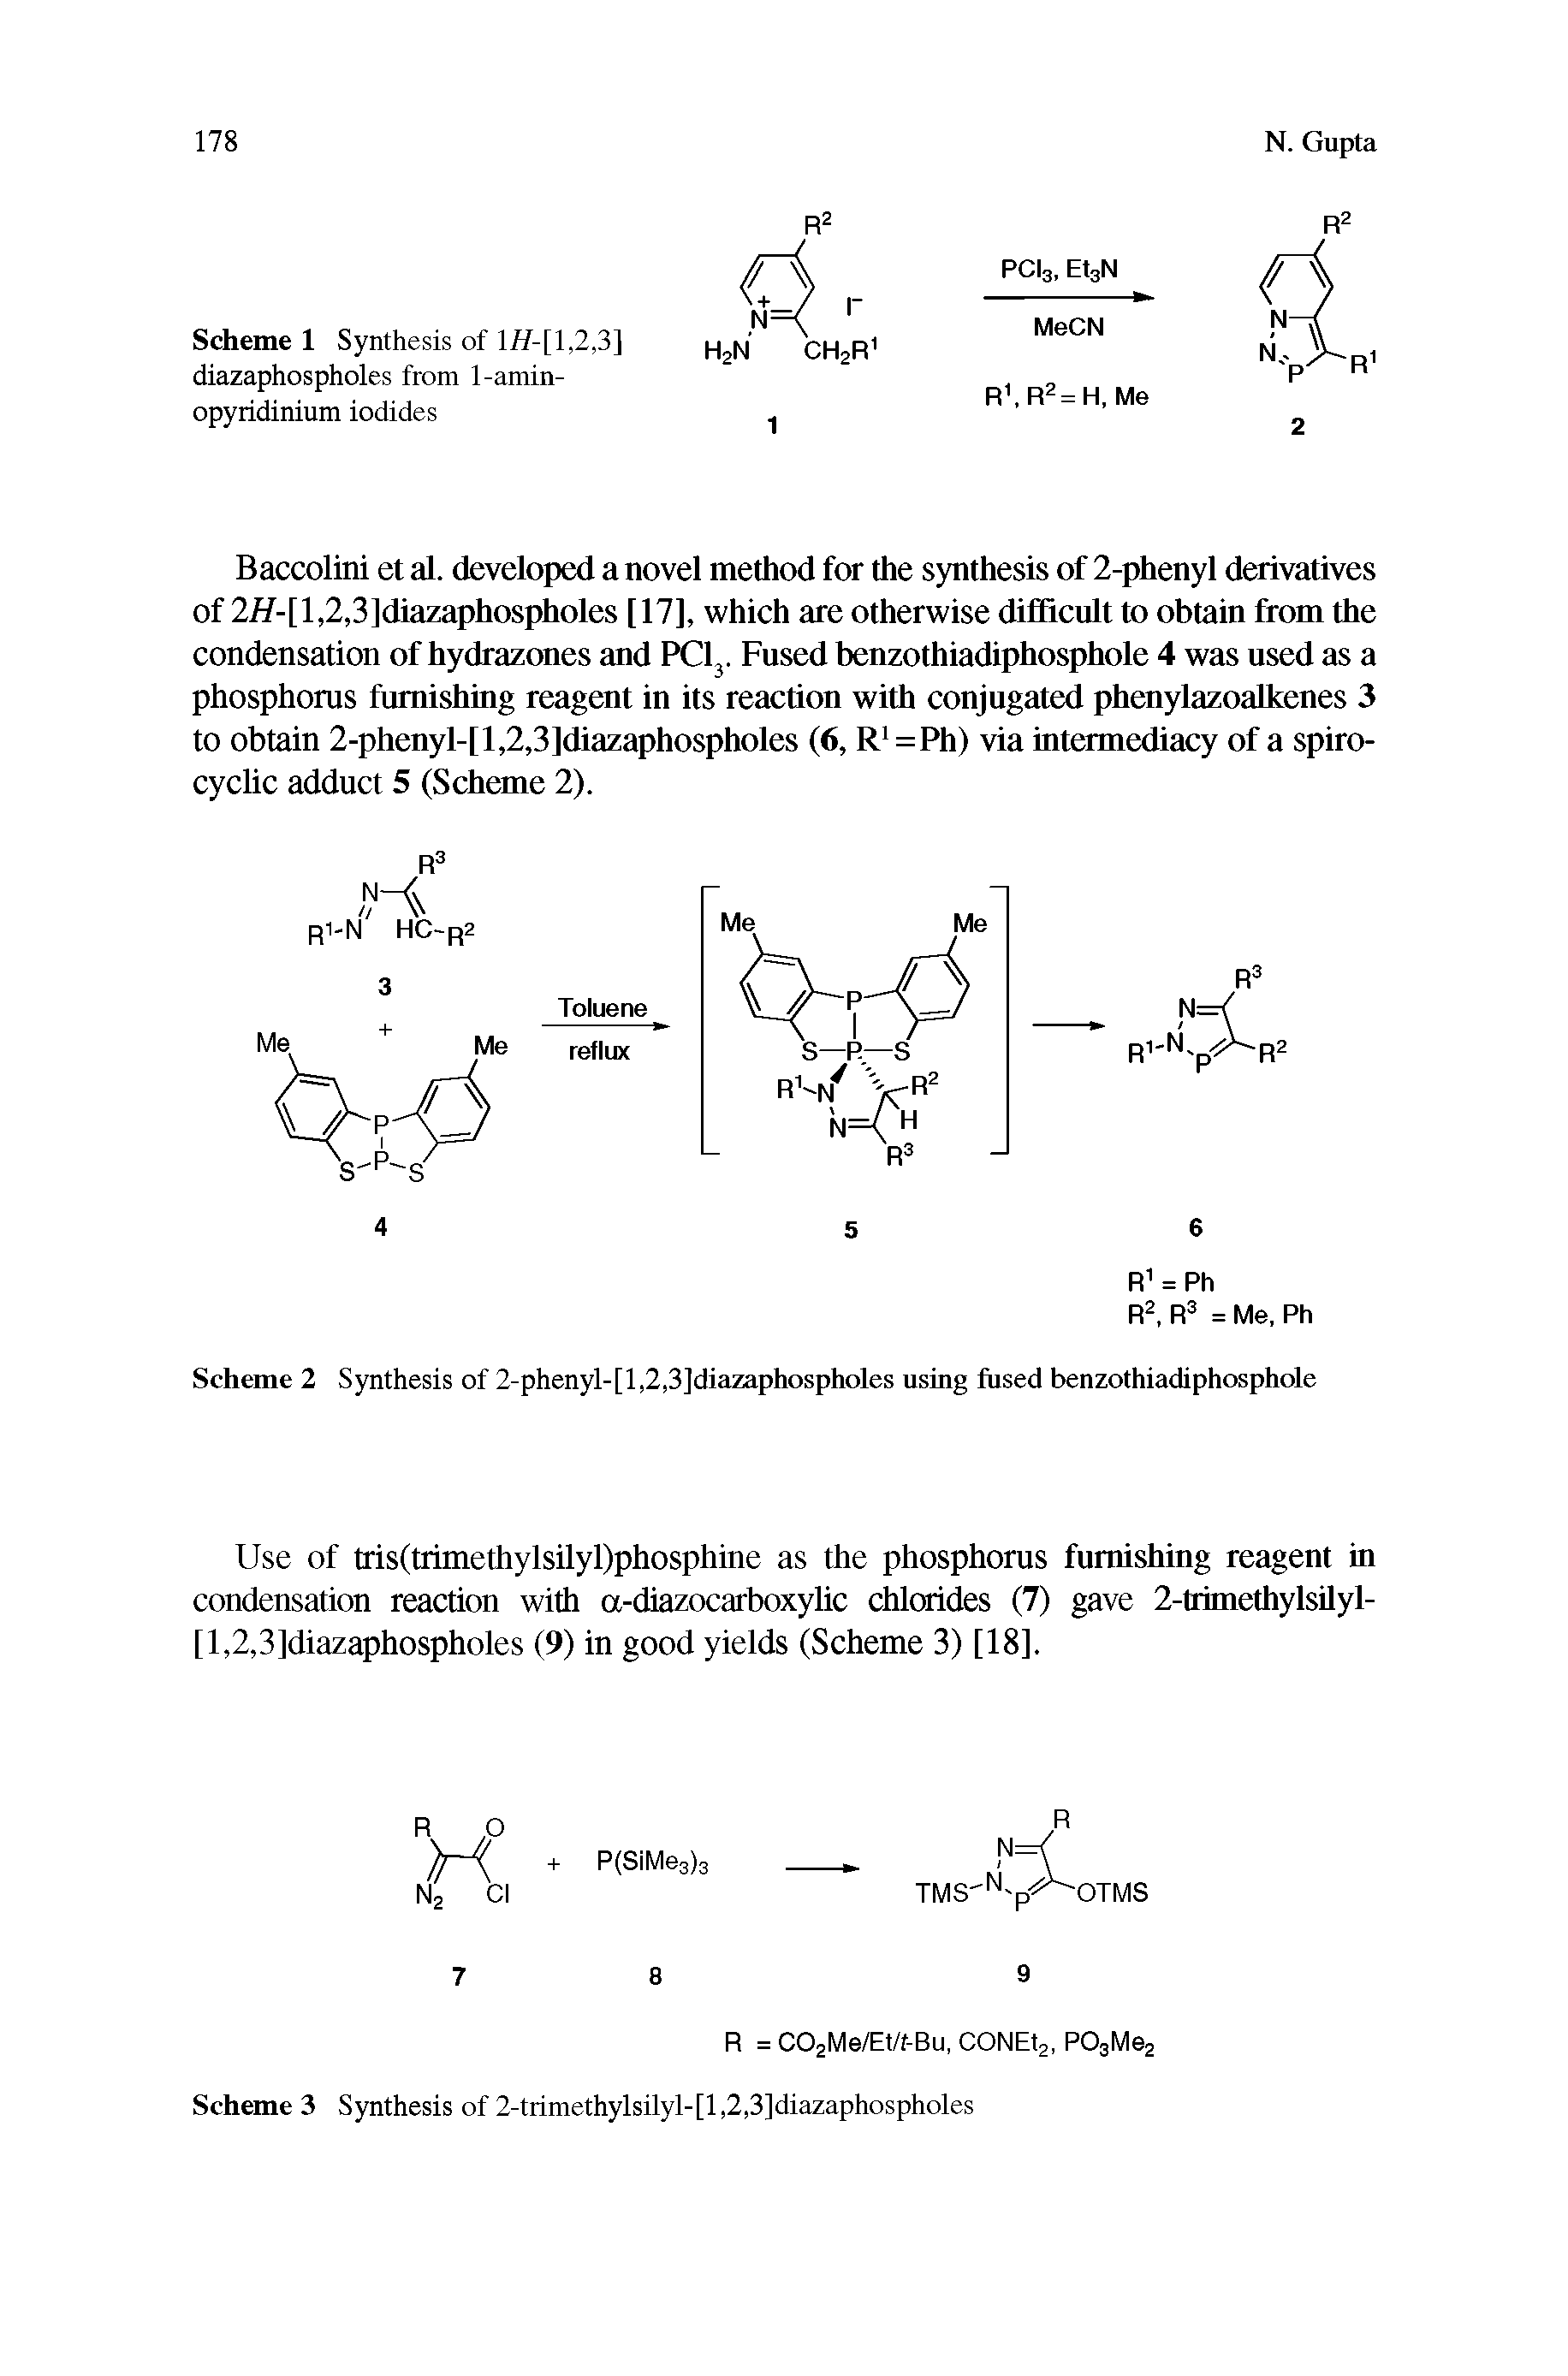 Scheme 2 Synthesis of 2-phenyl-[l,2,3]diazaphospholes using fused benzothiadiphosphole...